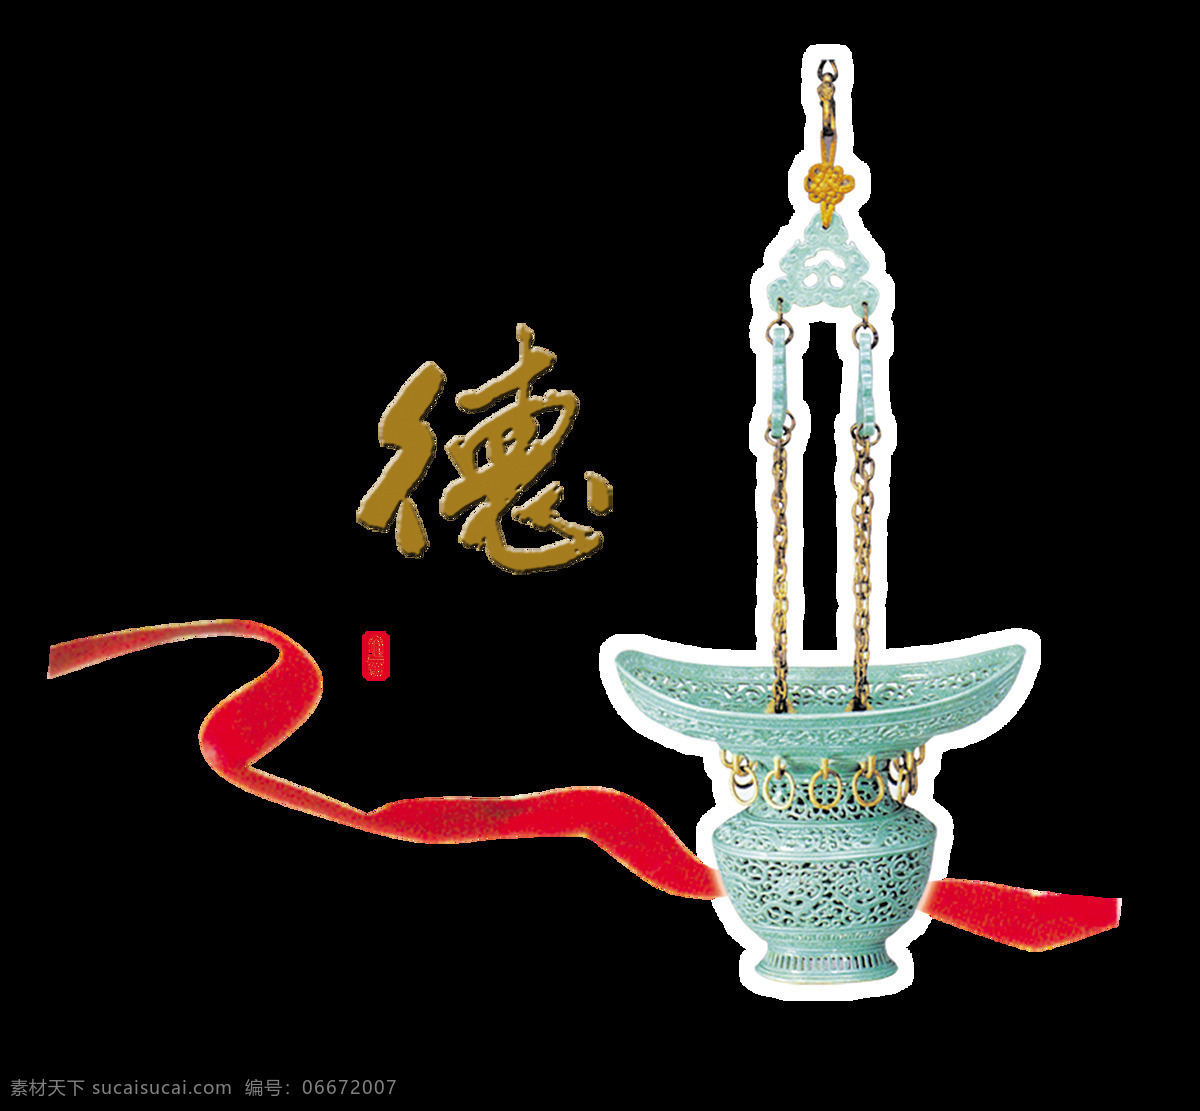 品德 美德 传统文化 中国 风 艺术 字 中国风 古风 古典 艺术字